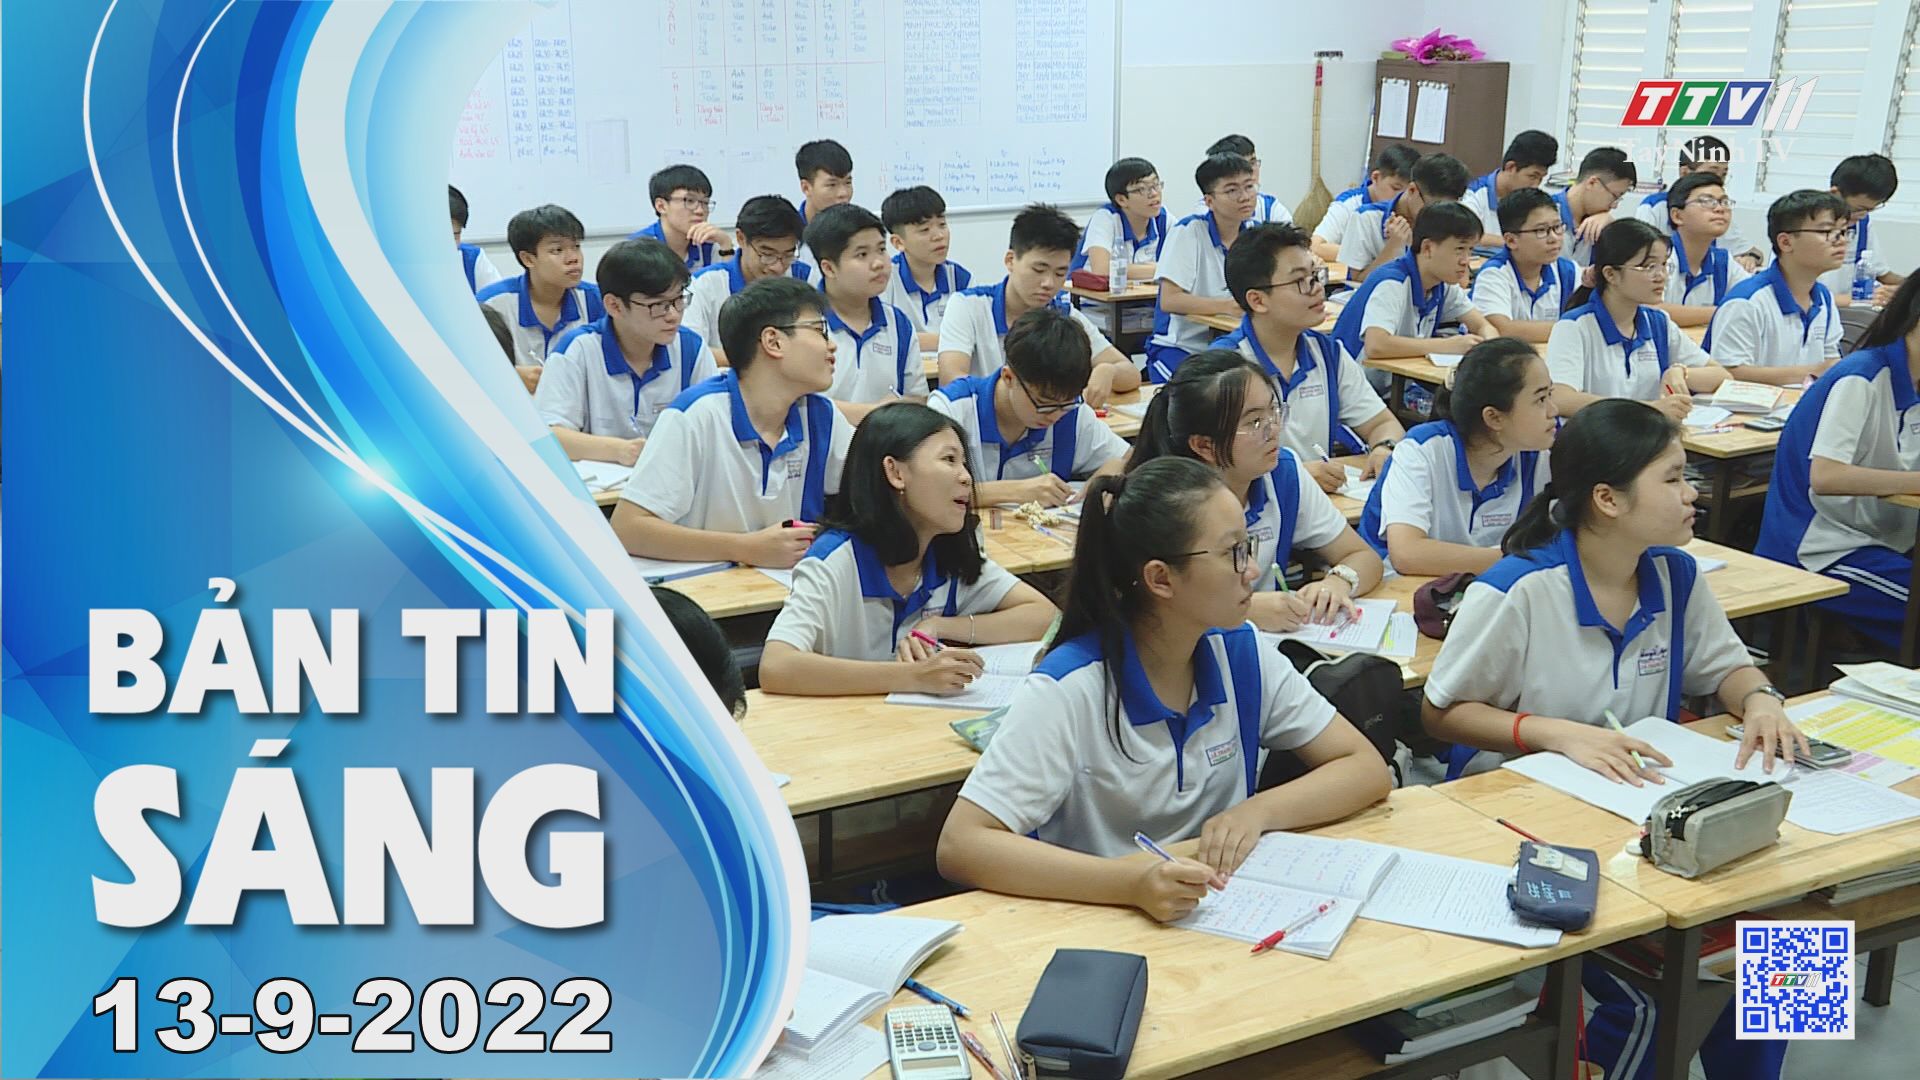 Bản tin sáng 13-9-2022 | Tin tức hôm nay | TayNinhTV